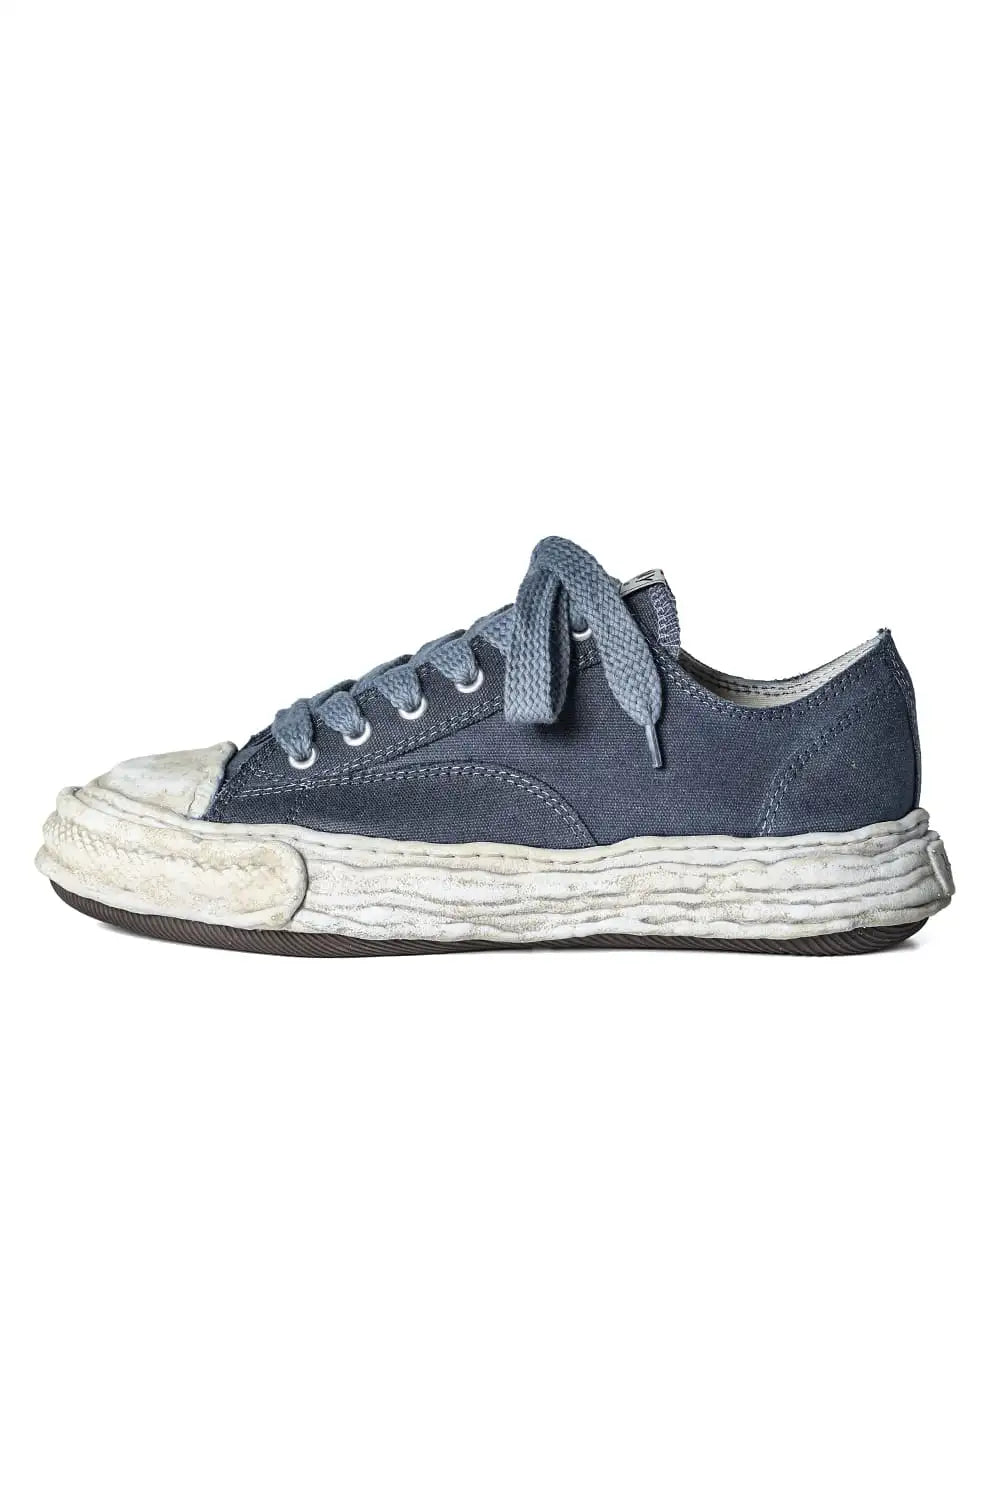 A12FW706-Black | PETERSON 23 canvas garment dye Low-Top sneakers